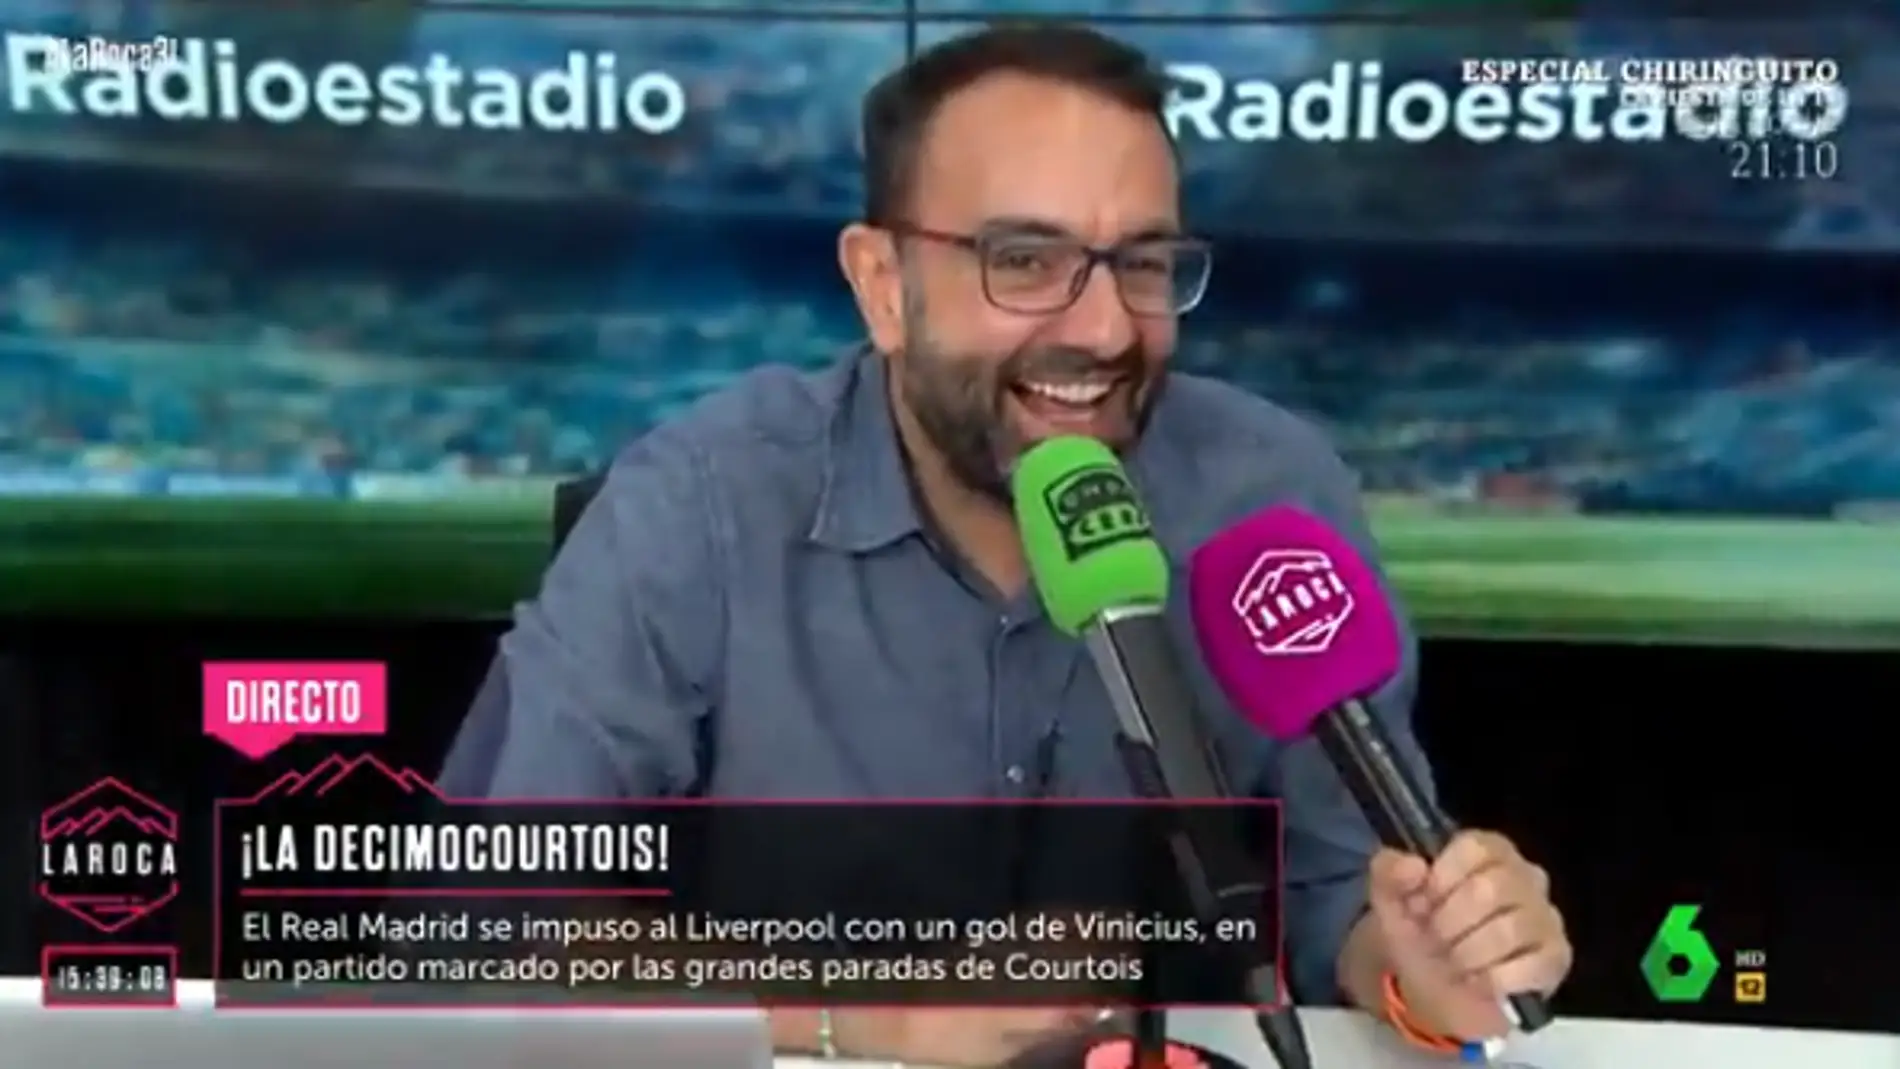 Juan del Val celebra en Radioestadio con Edu García la decimocuarta Champions del Real Madrid